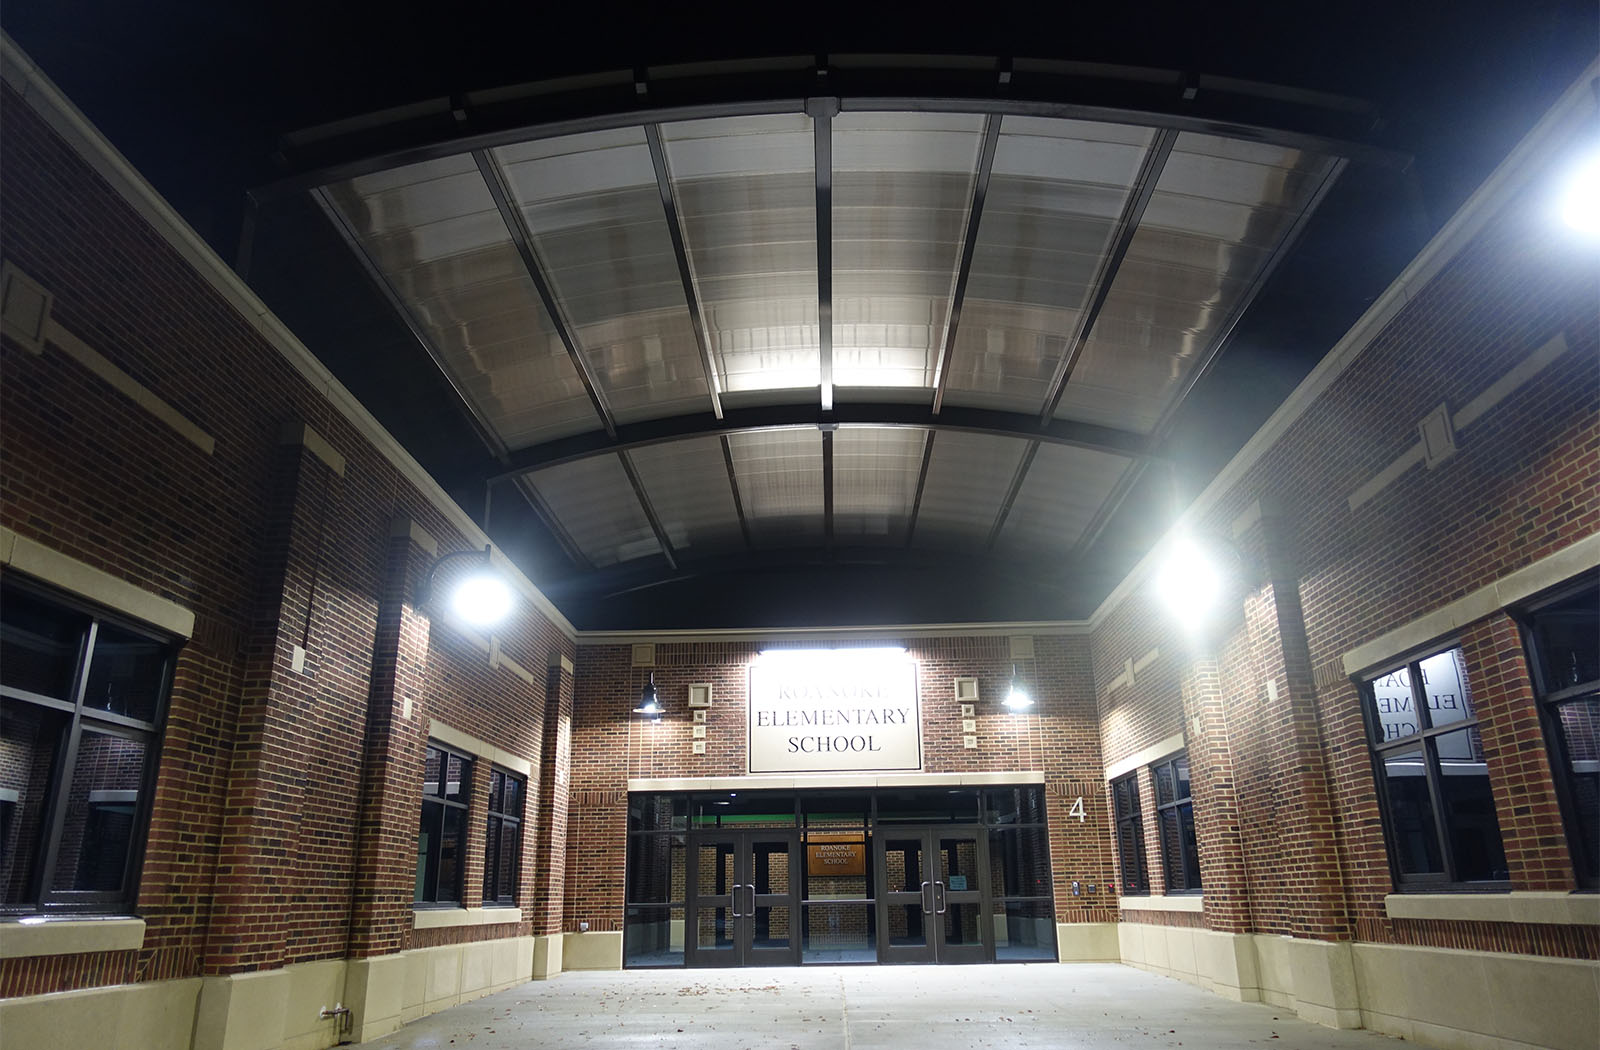 Roanoke School-62492d-40x46-Entrance Canopy-Education